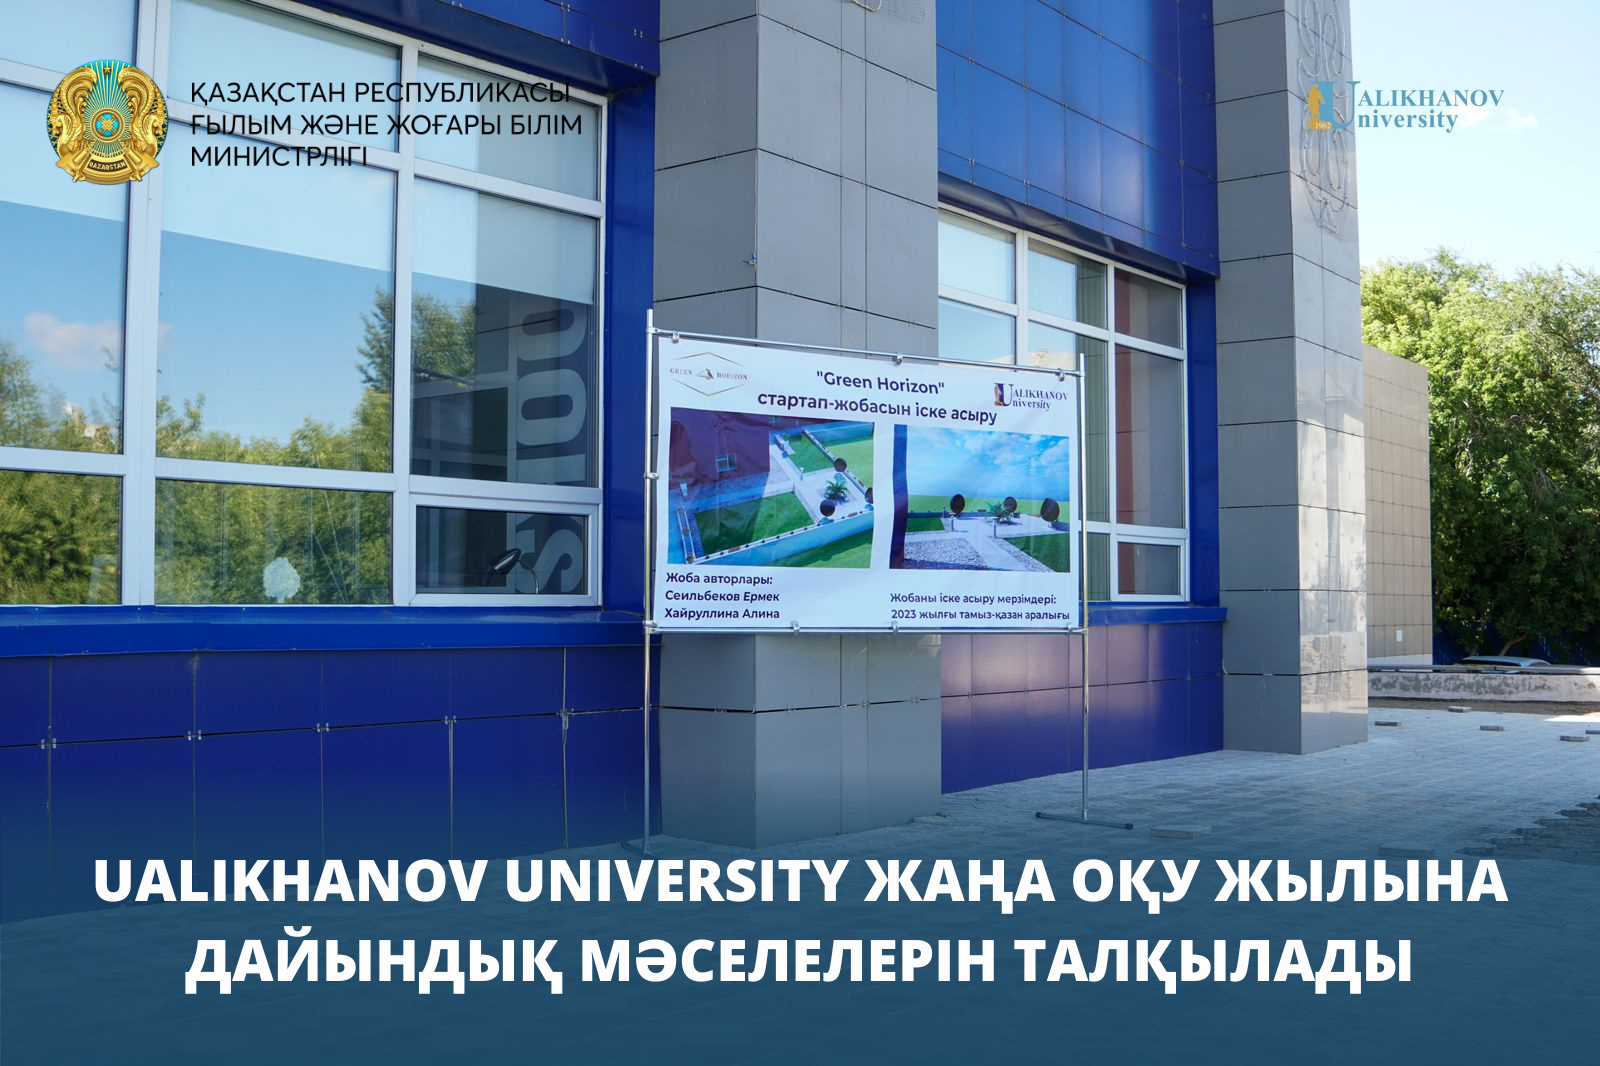 Ualikhanov University жаңа оқу жылына дайындық мәселелерін талқылады